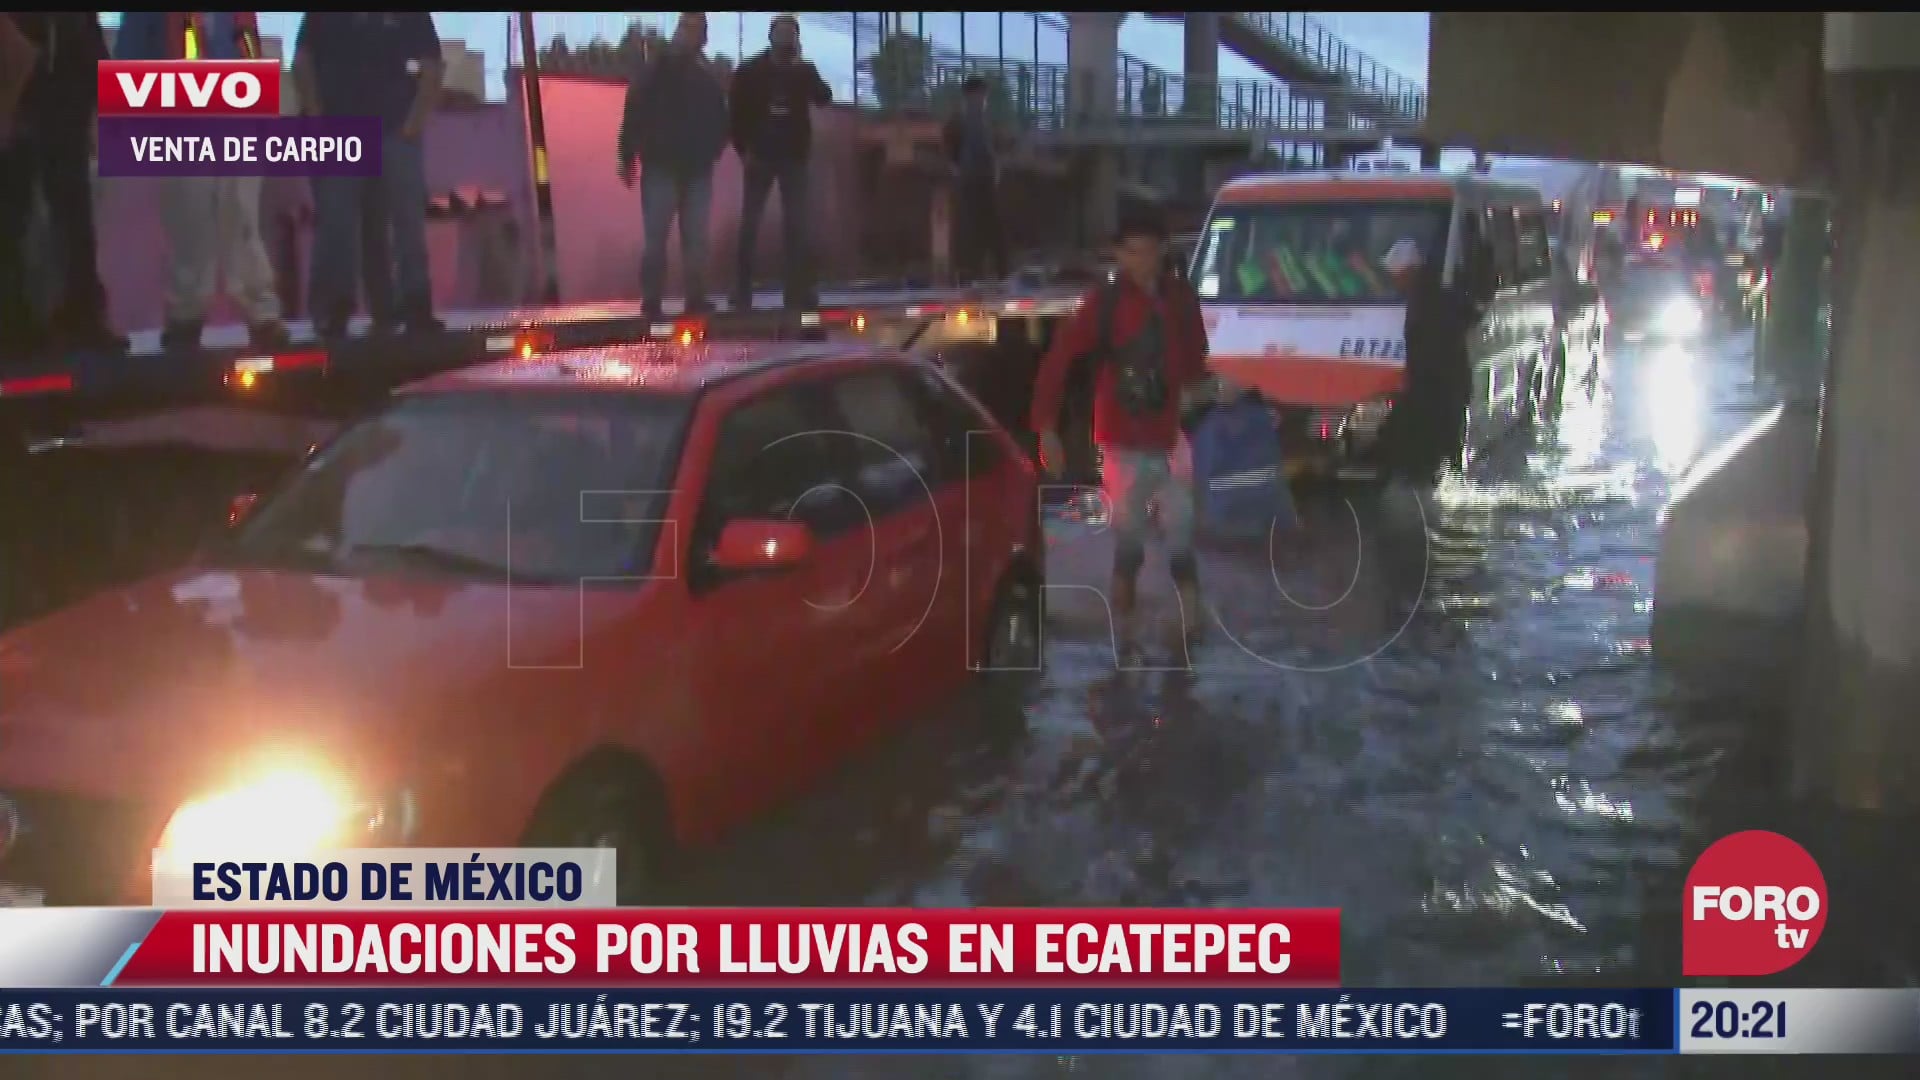 habitantes de ecatepec intentan subir a plataforma de trailer por inundacion